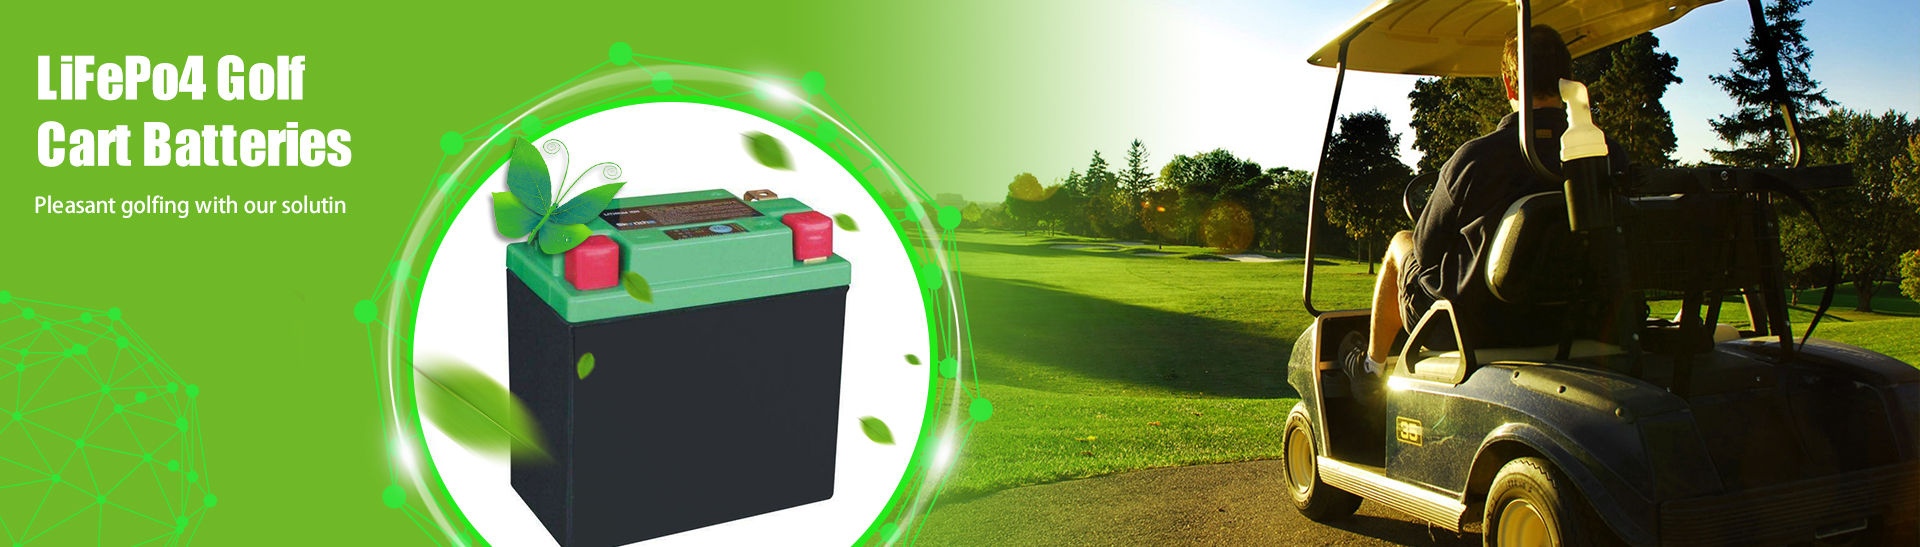 48 volt lithiumbatterij voor golfkar